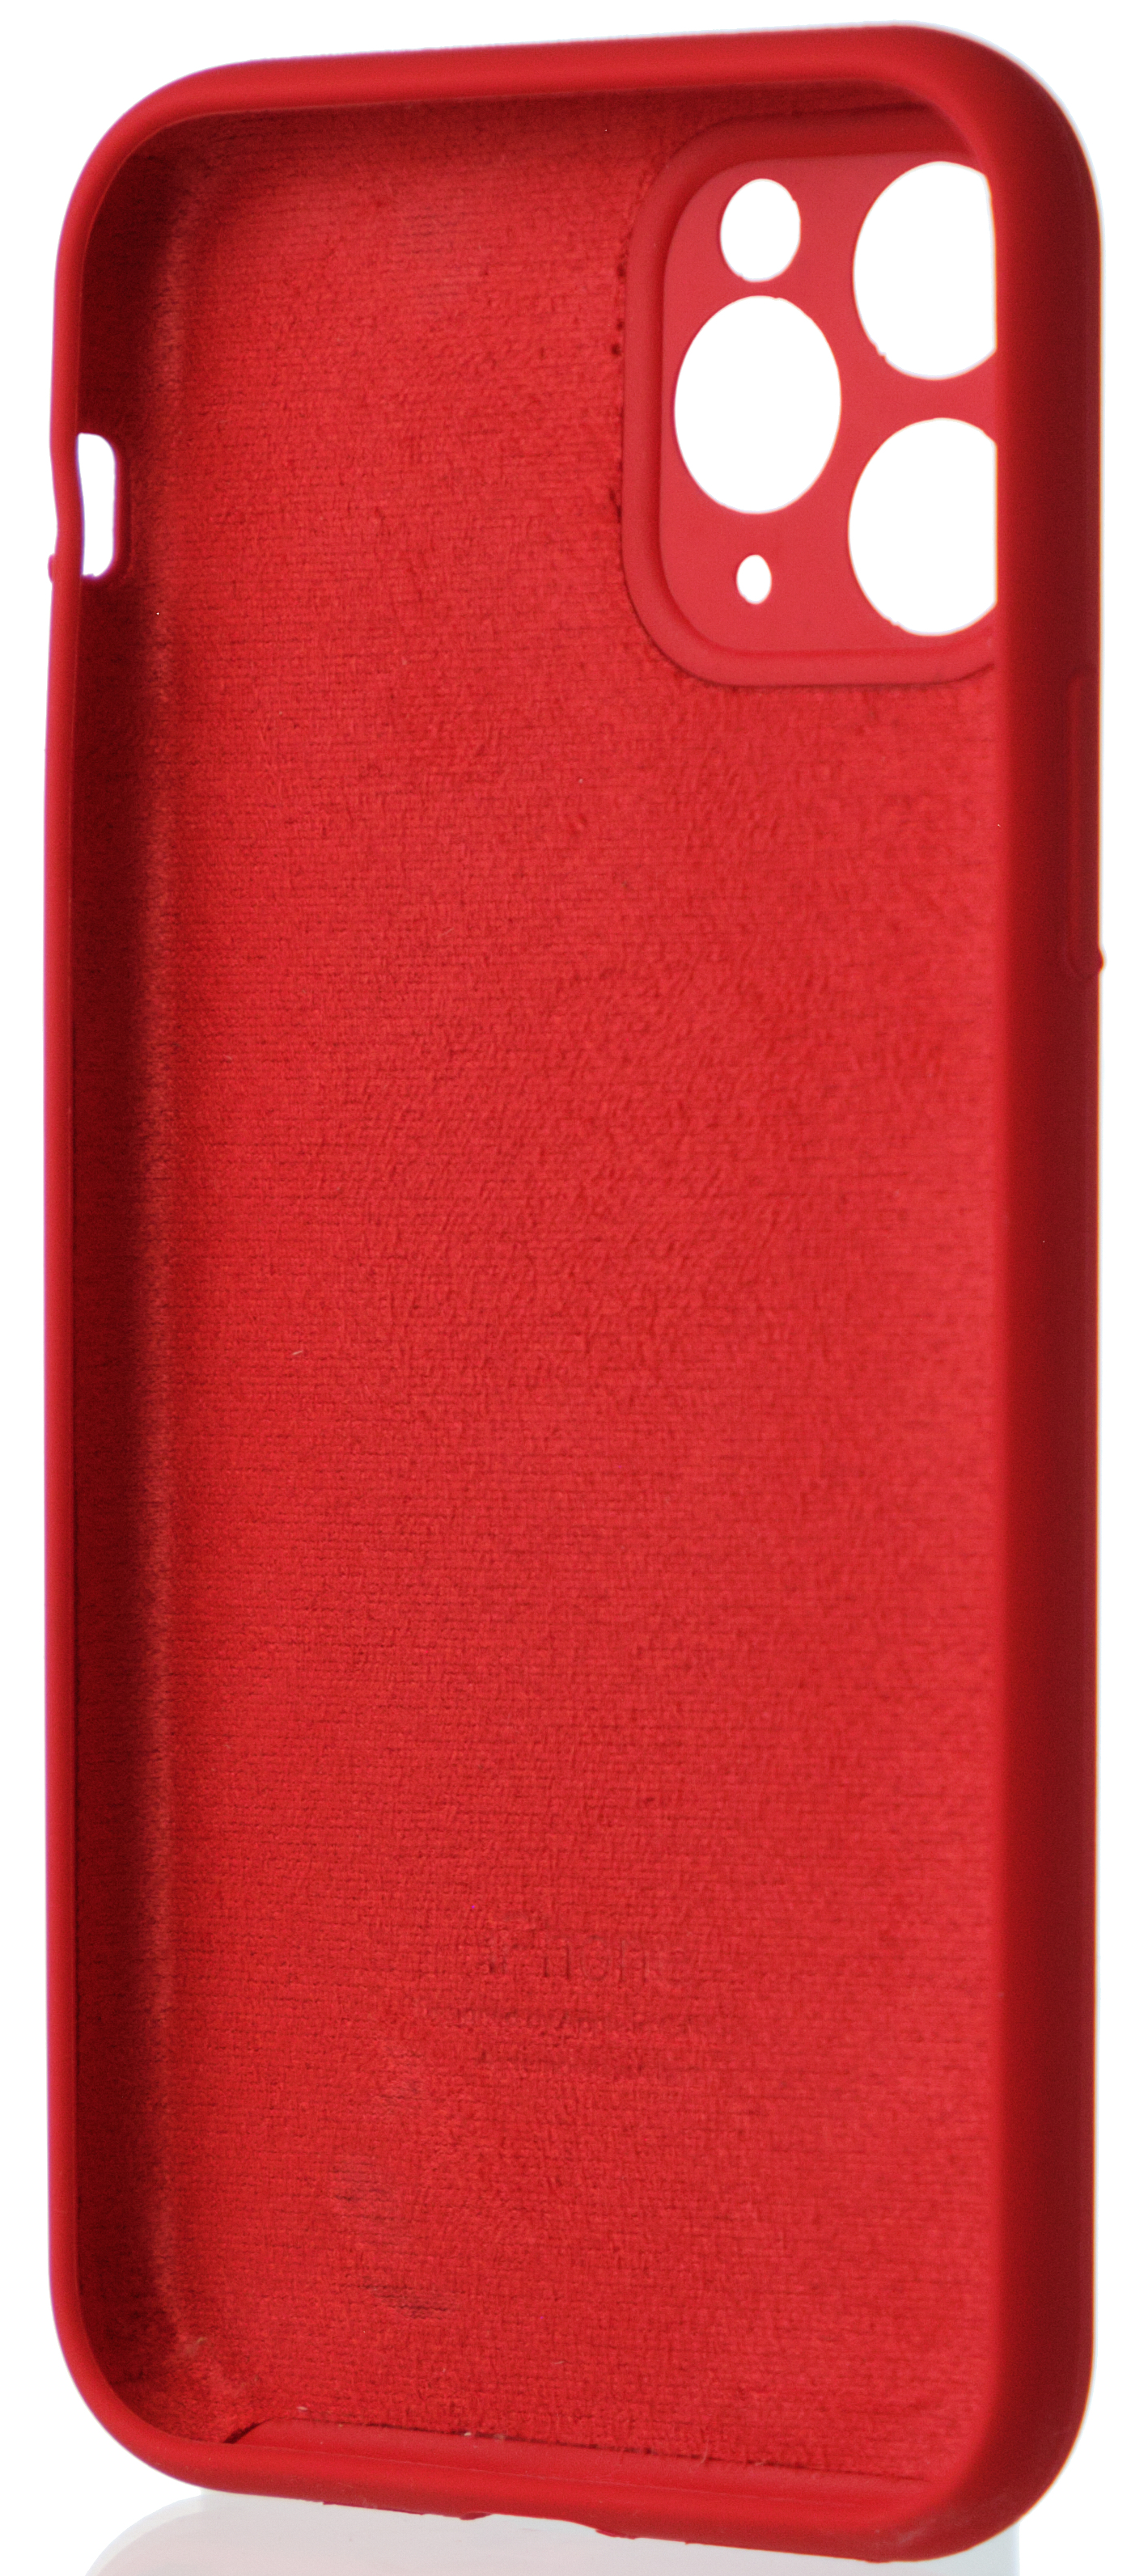 Чехол Silicone Case полная защита для iPhone 11 Pro красный